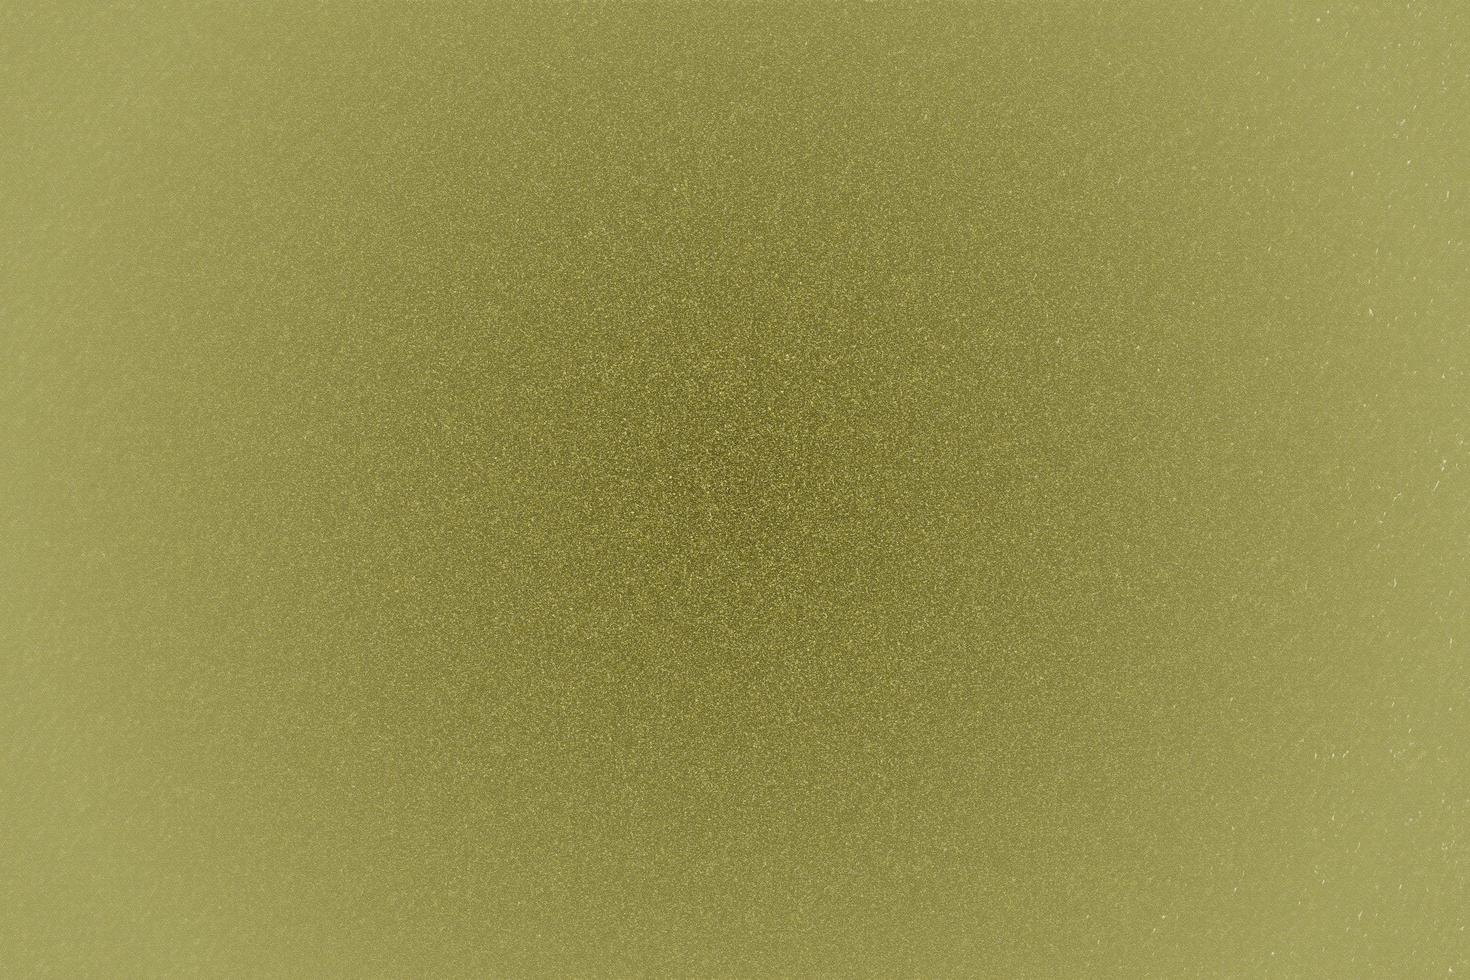 alte grüne leinwandoberfläche, texturhintergrund foto